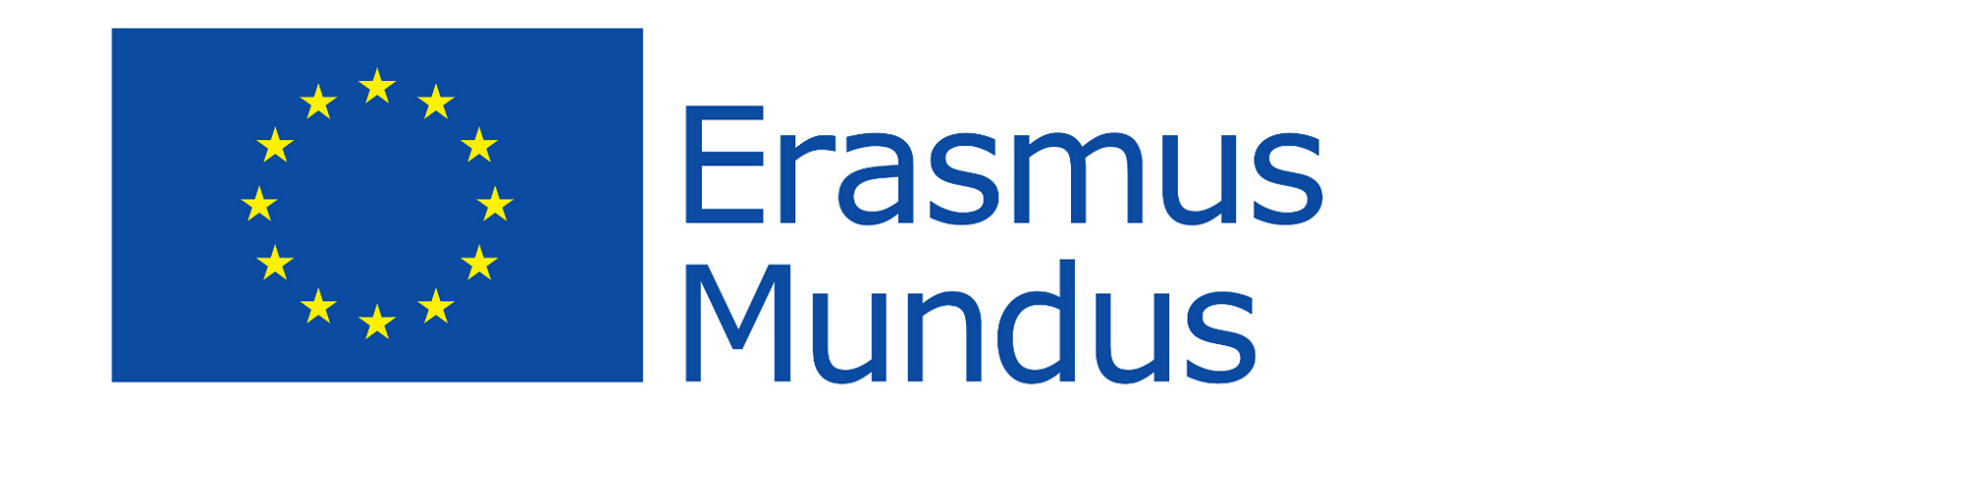 Erasmus Mundus logo